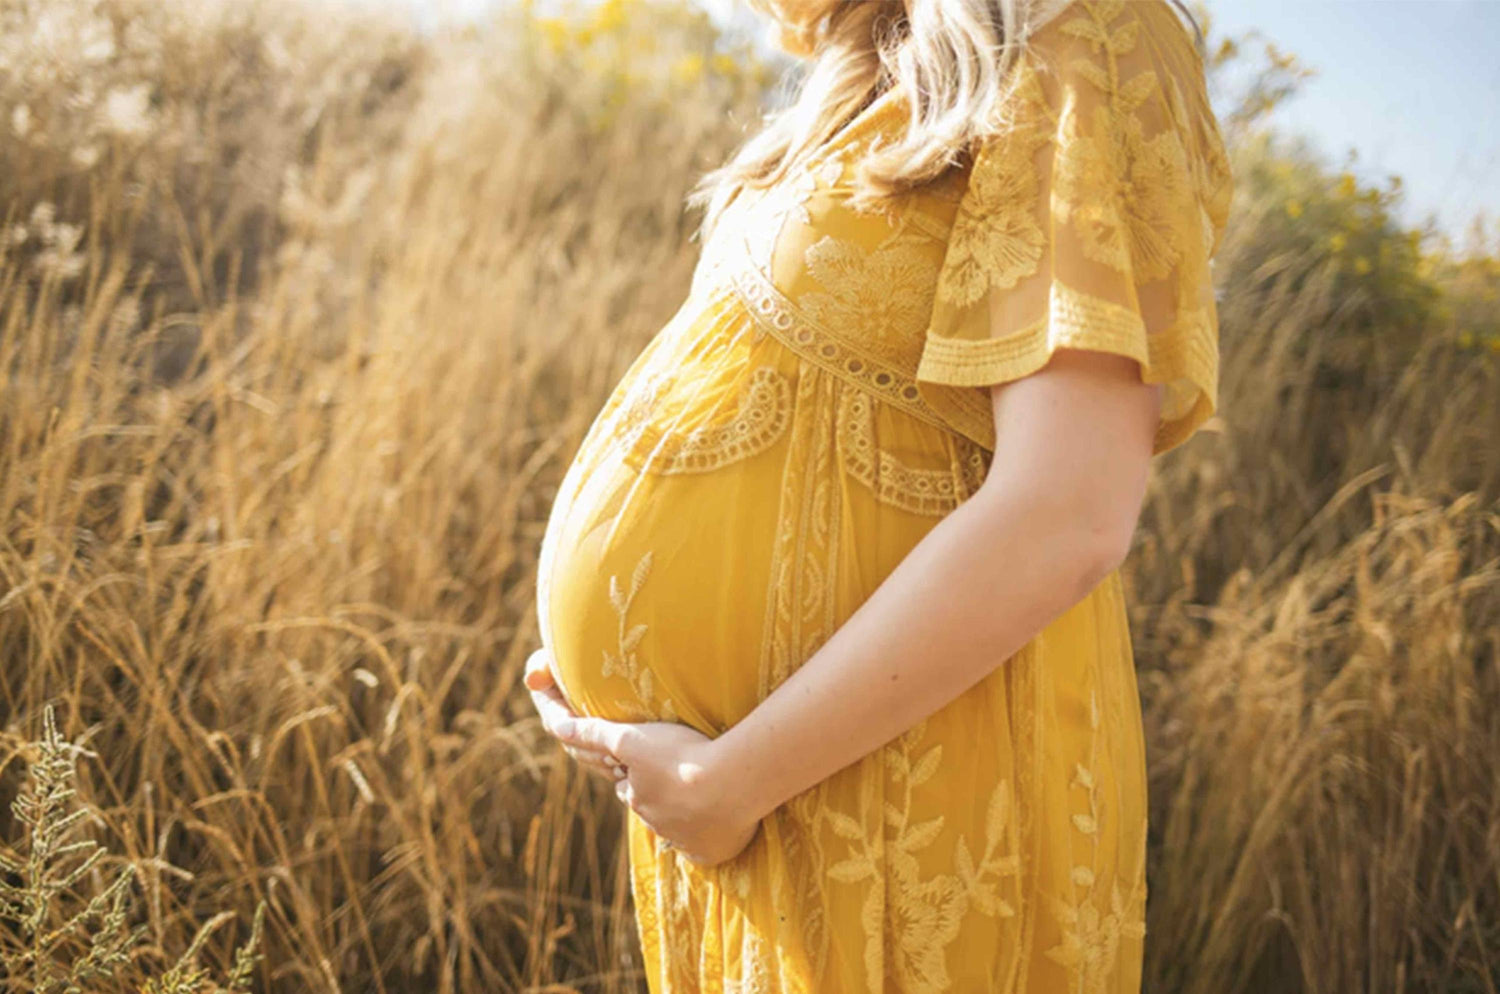 Pourquoi faut-il éviter la carence en vitamine B12 durant la grossesse ?